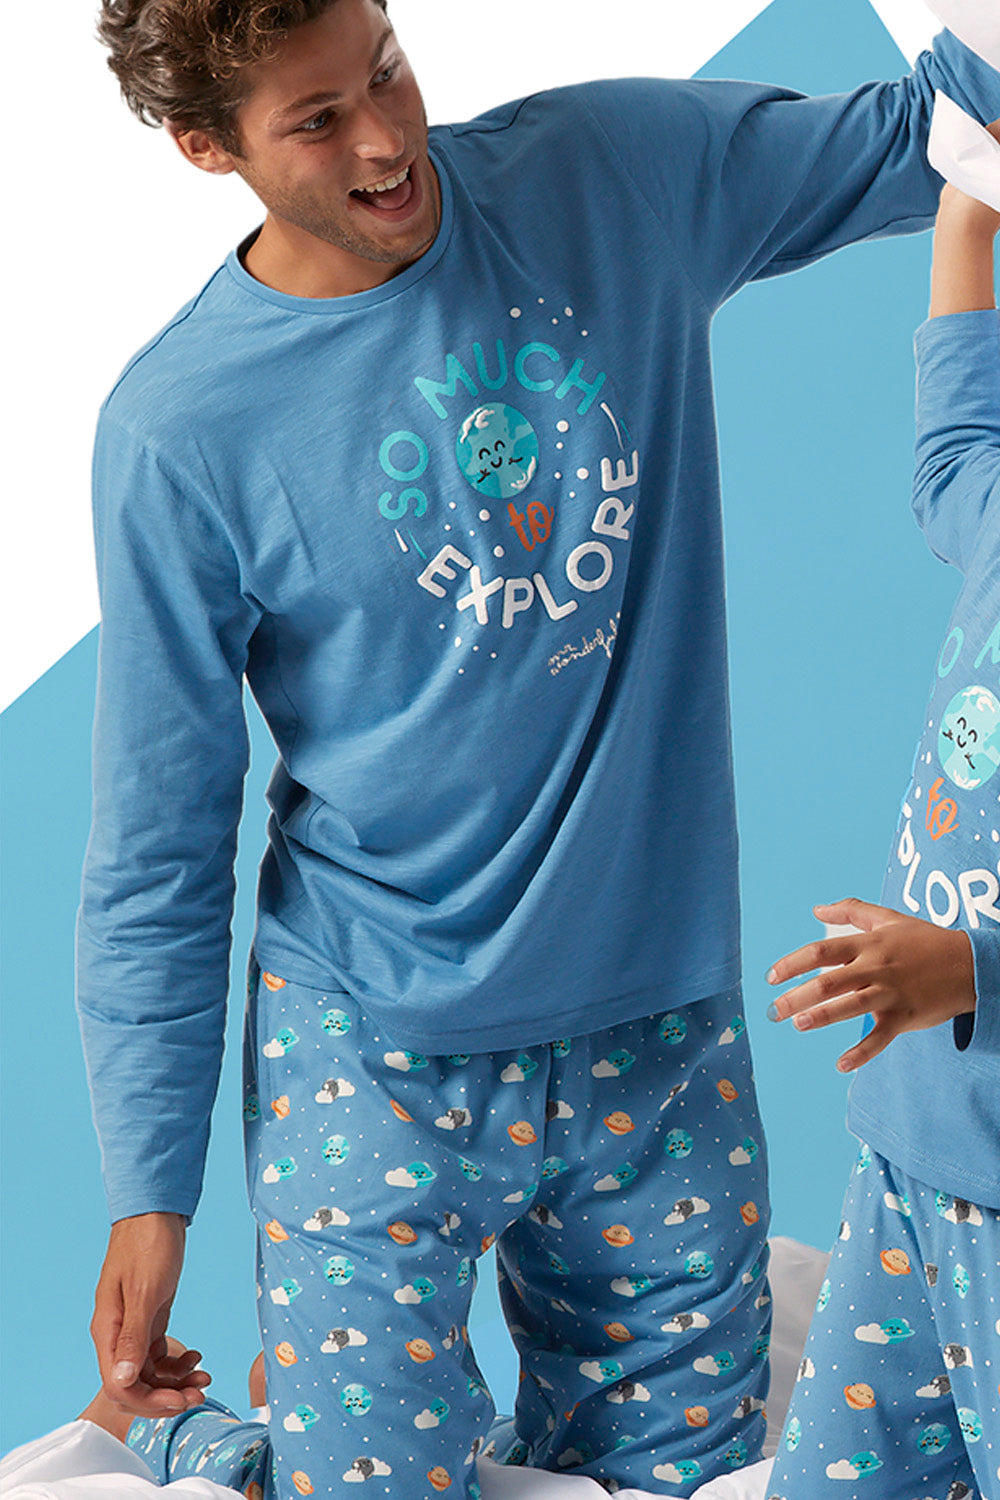 Pijama Hombre Azul y Gris - Comprar en Scotfield